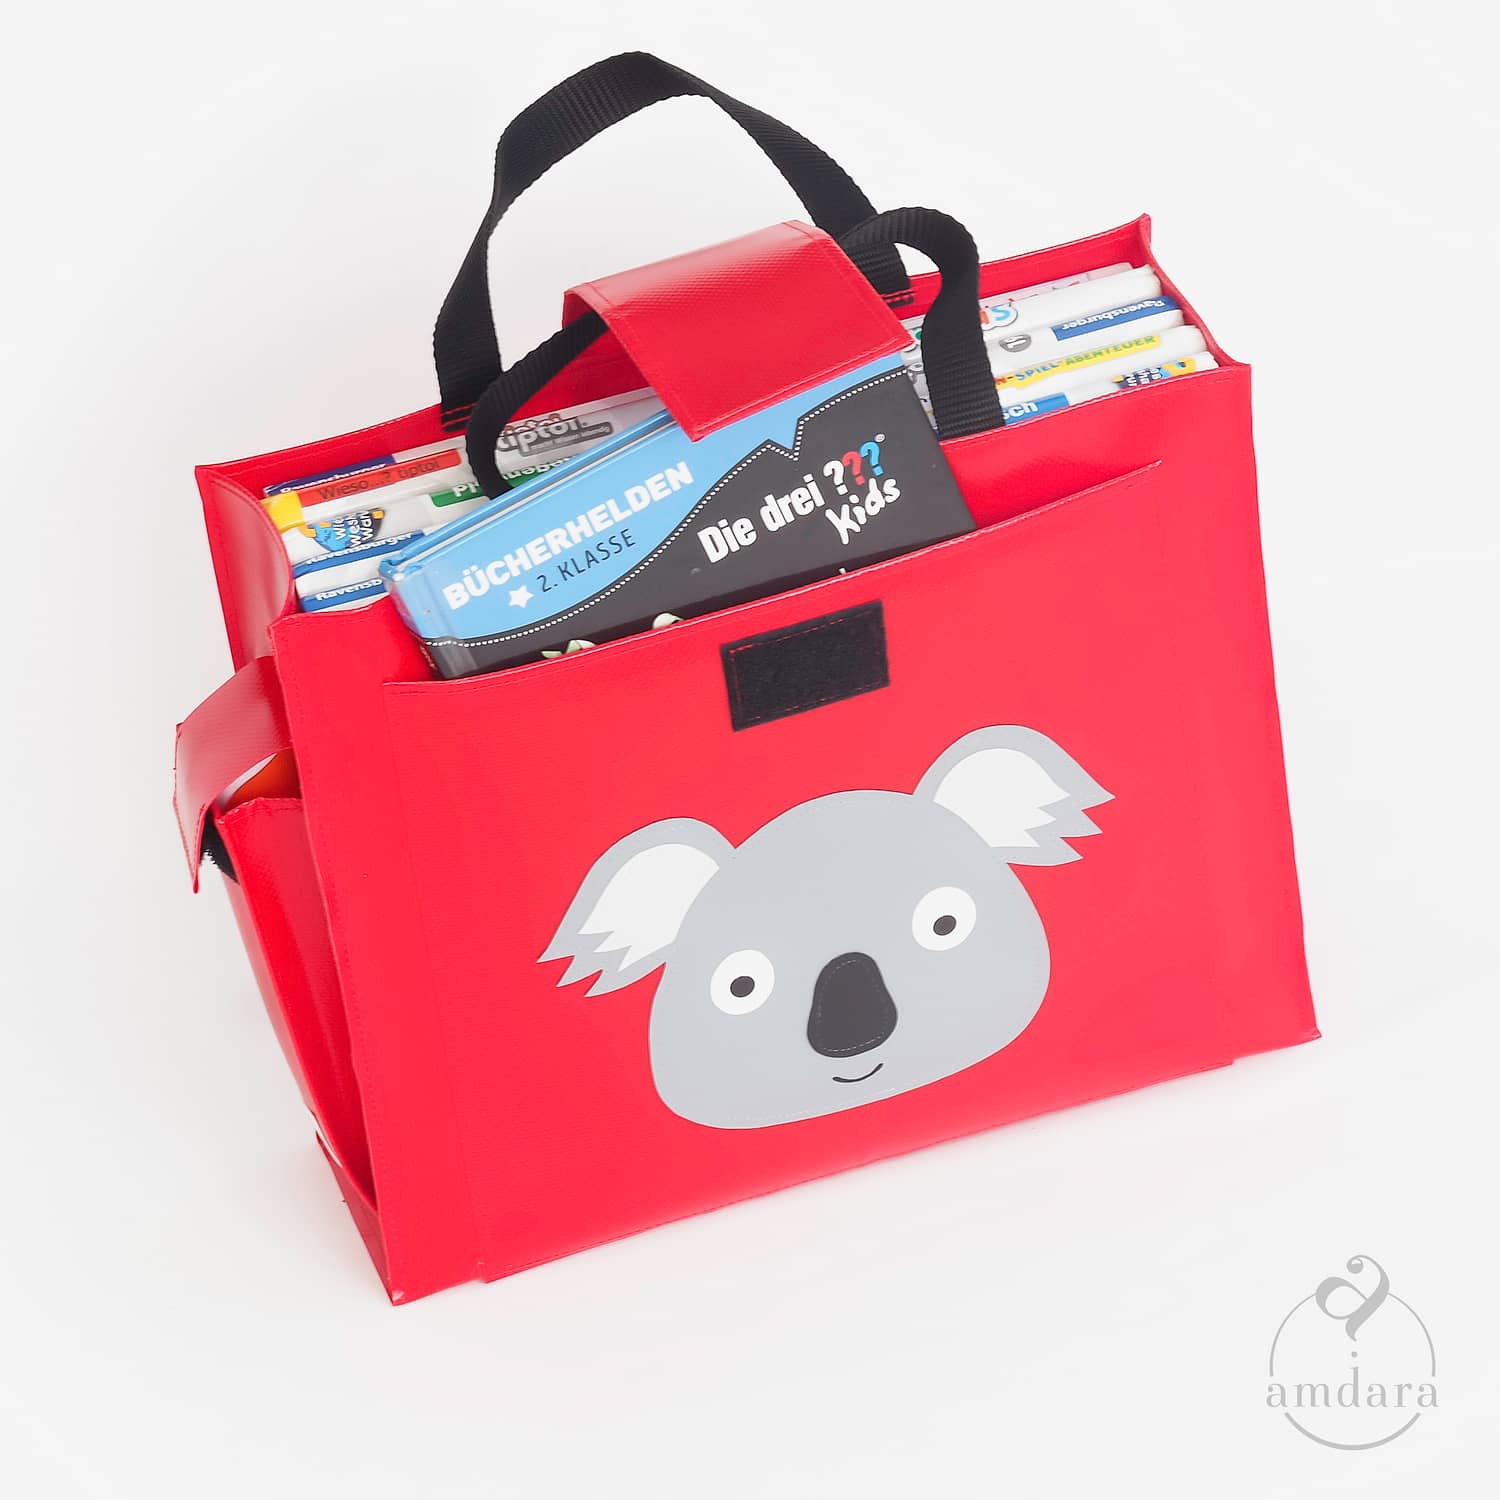 Tiptoi-Büchertasche, Büchertasche für Kinder, Tiptoi Tasche